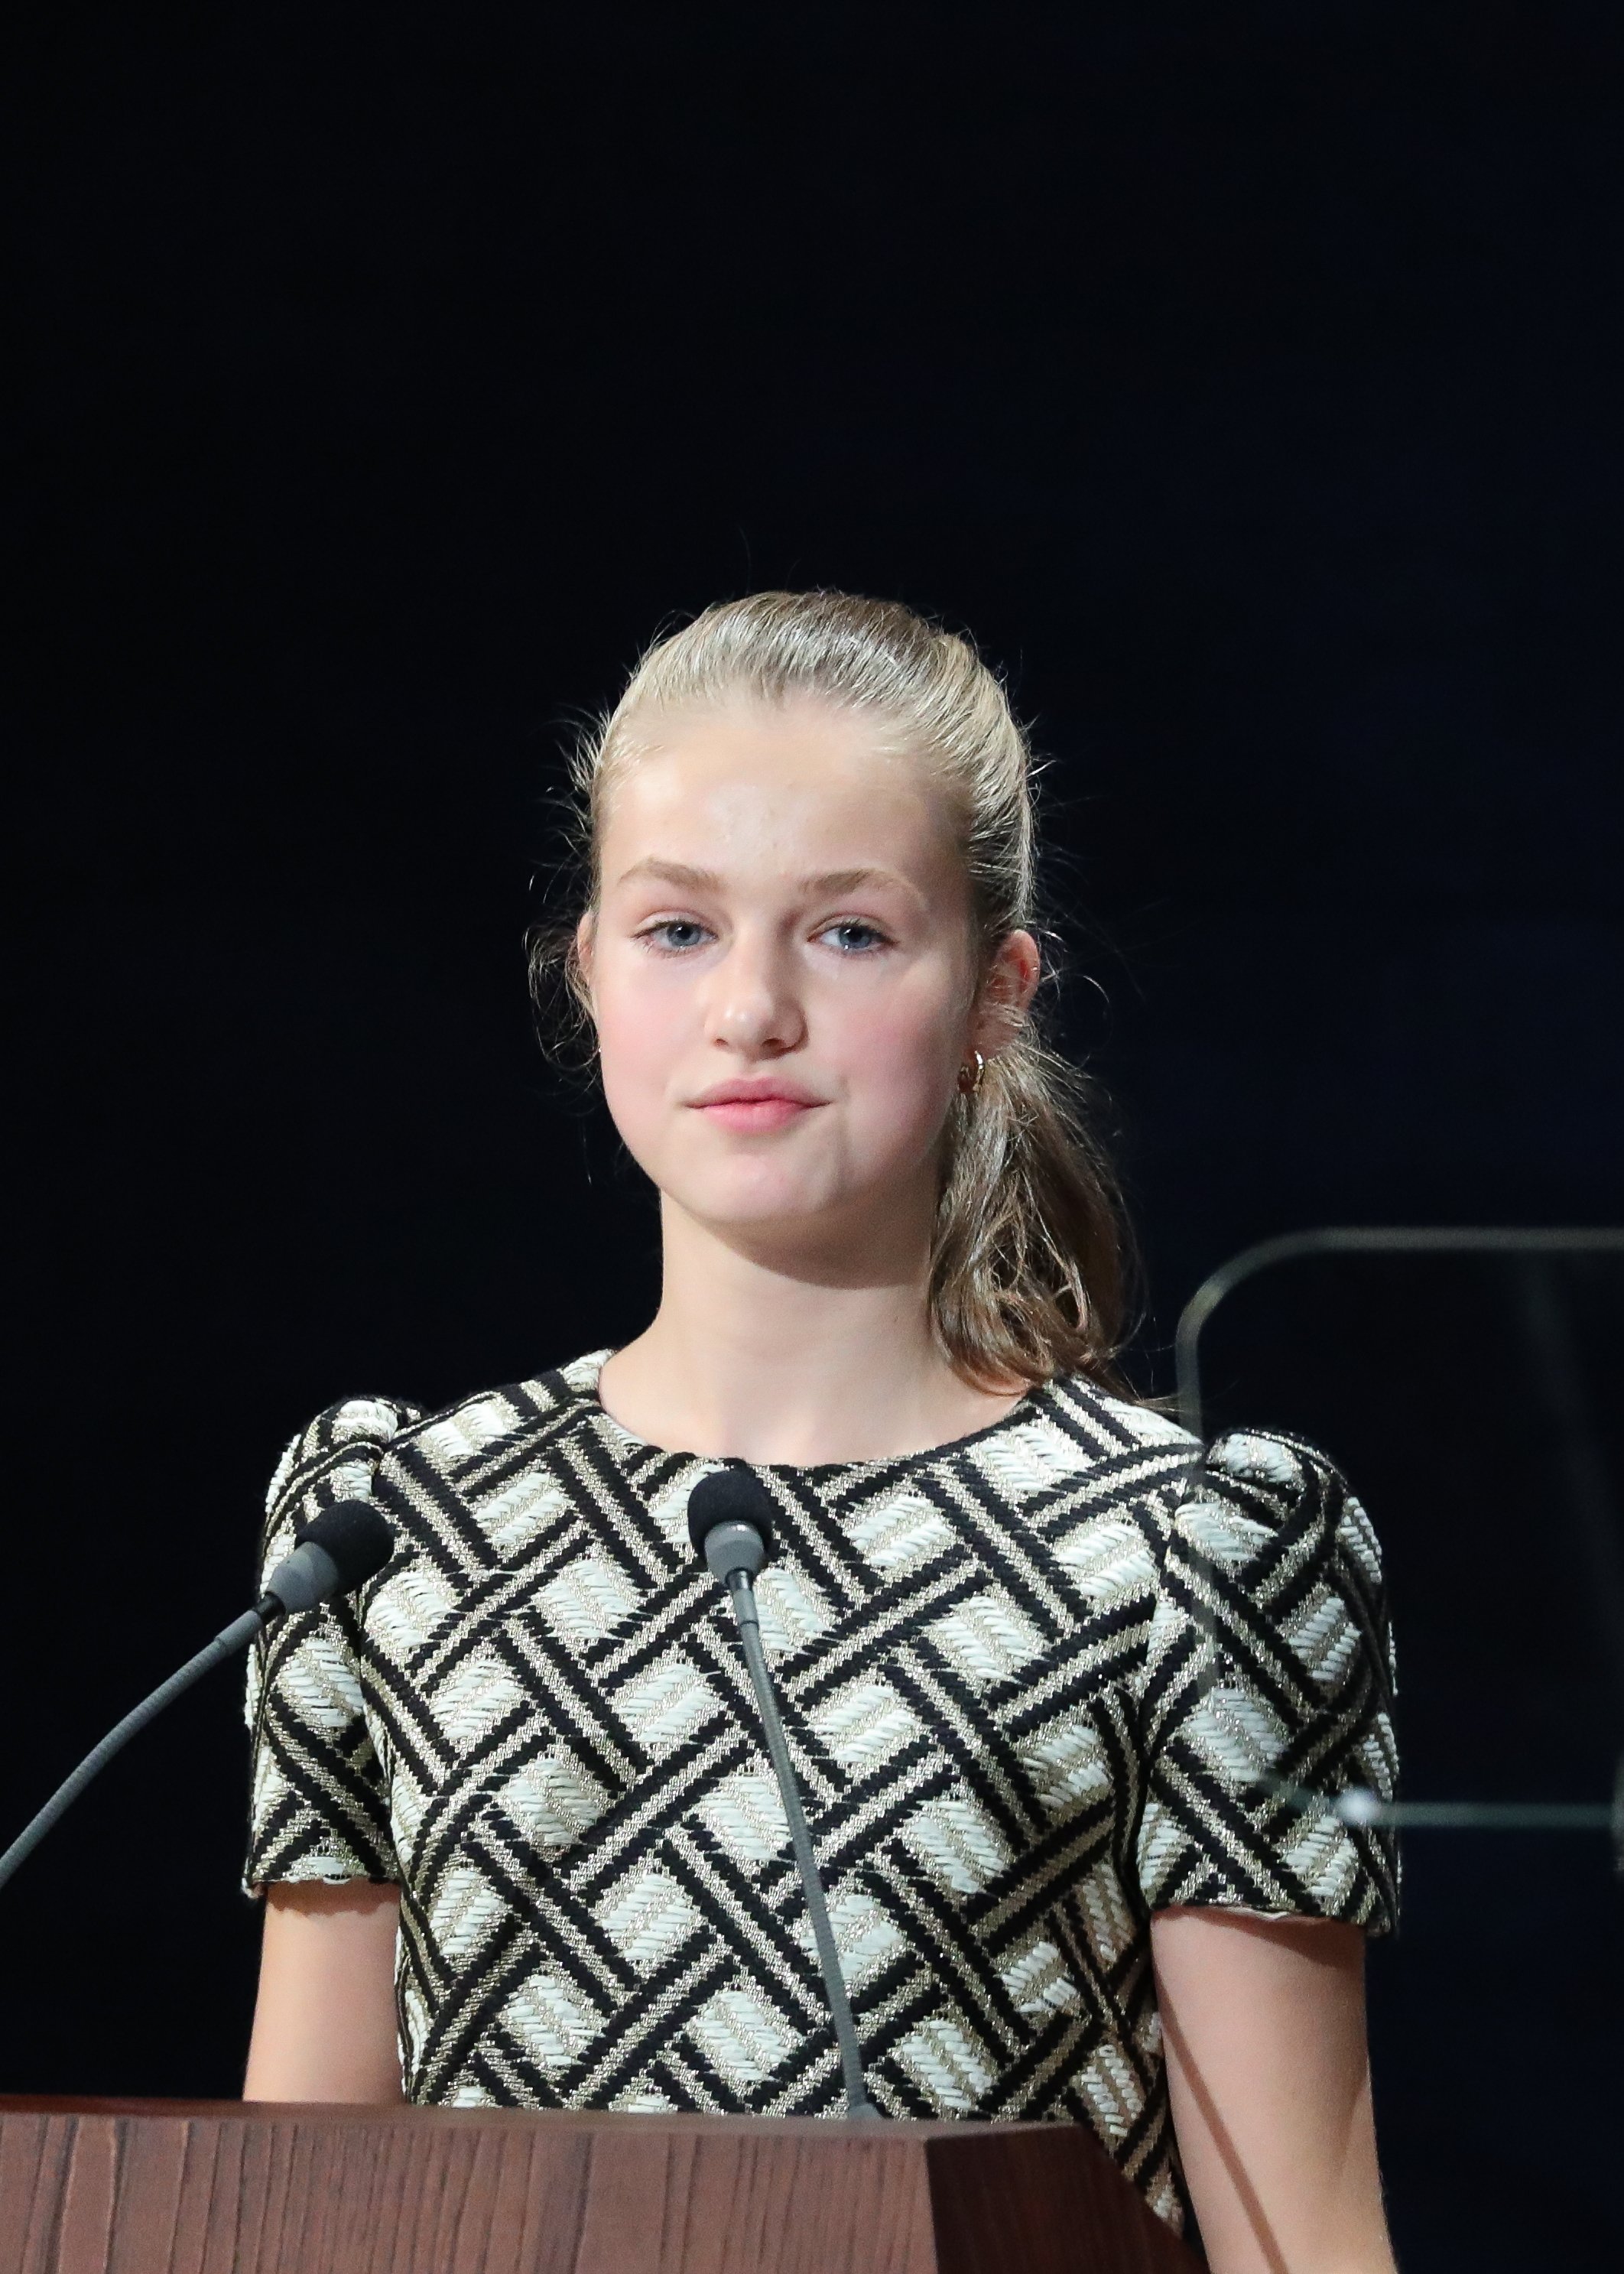 La princesa de Noruega cumple 18: fotos espectaculares que Leonor nunca se hará